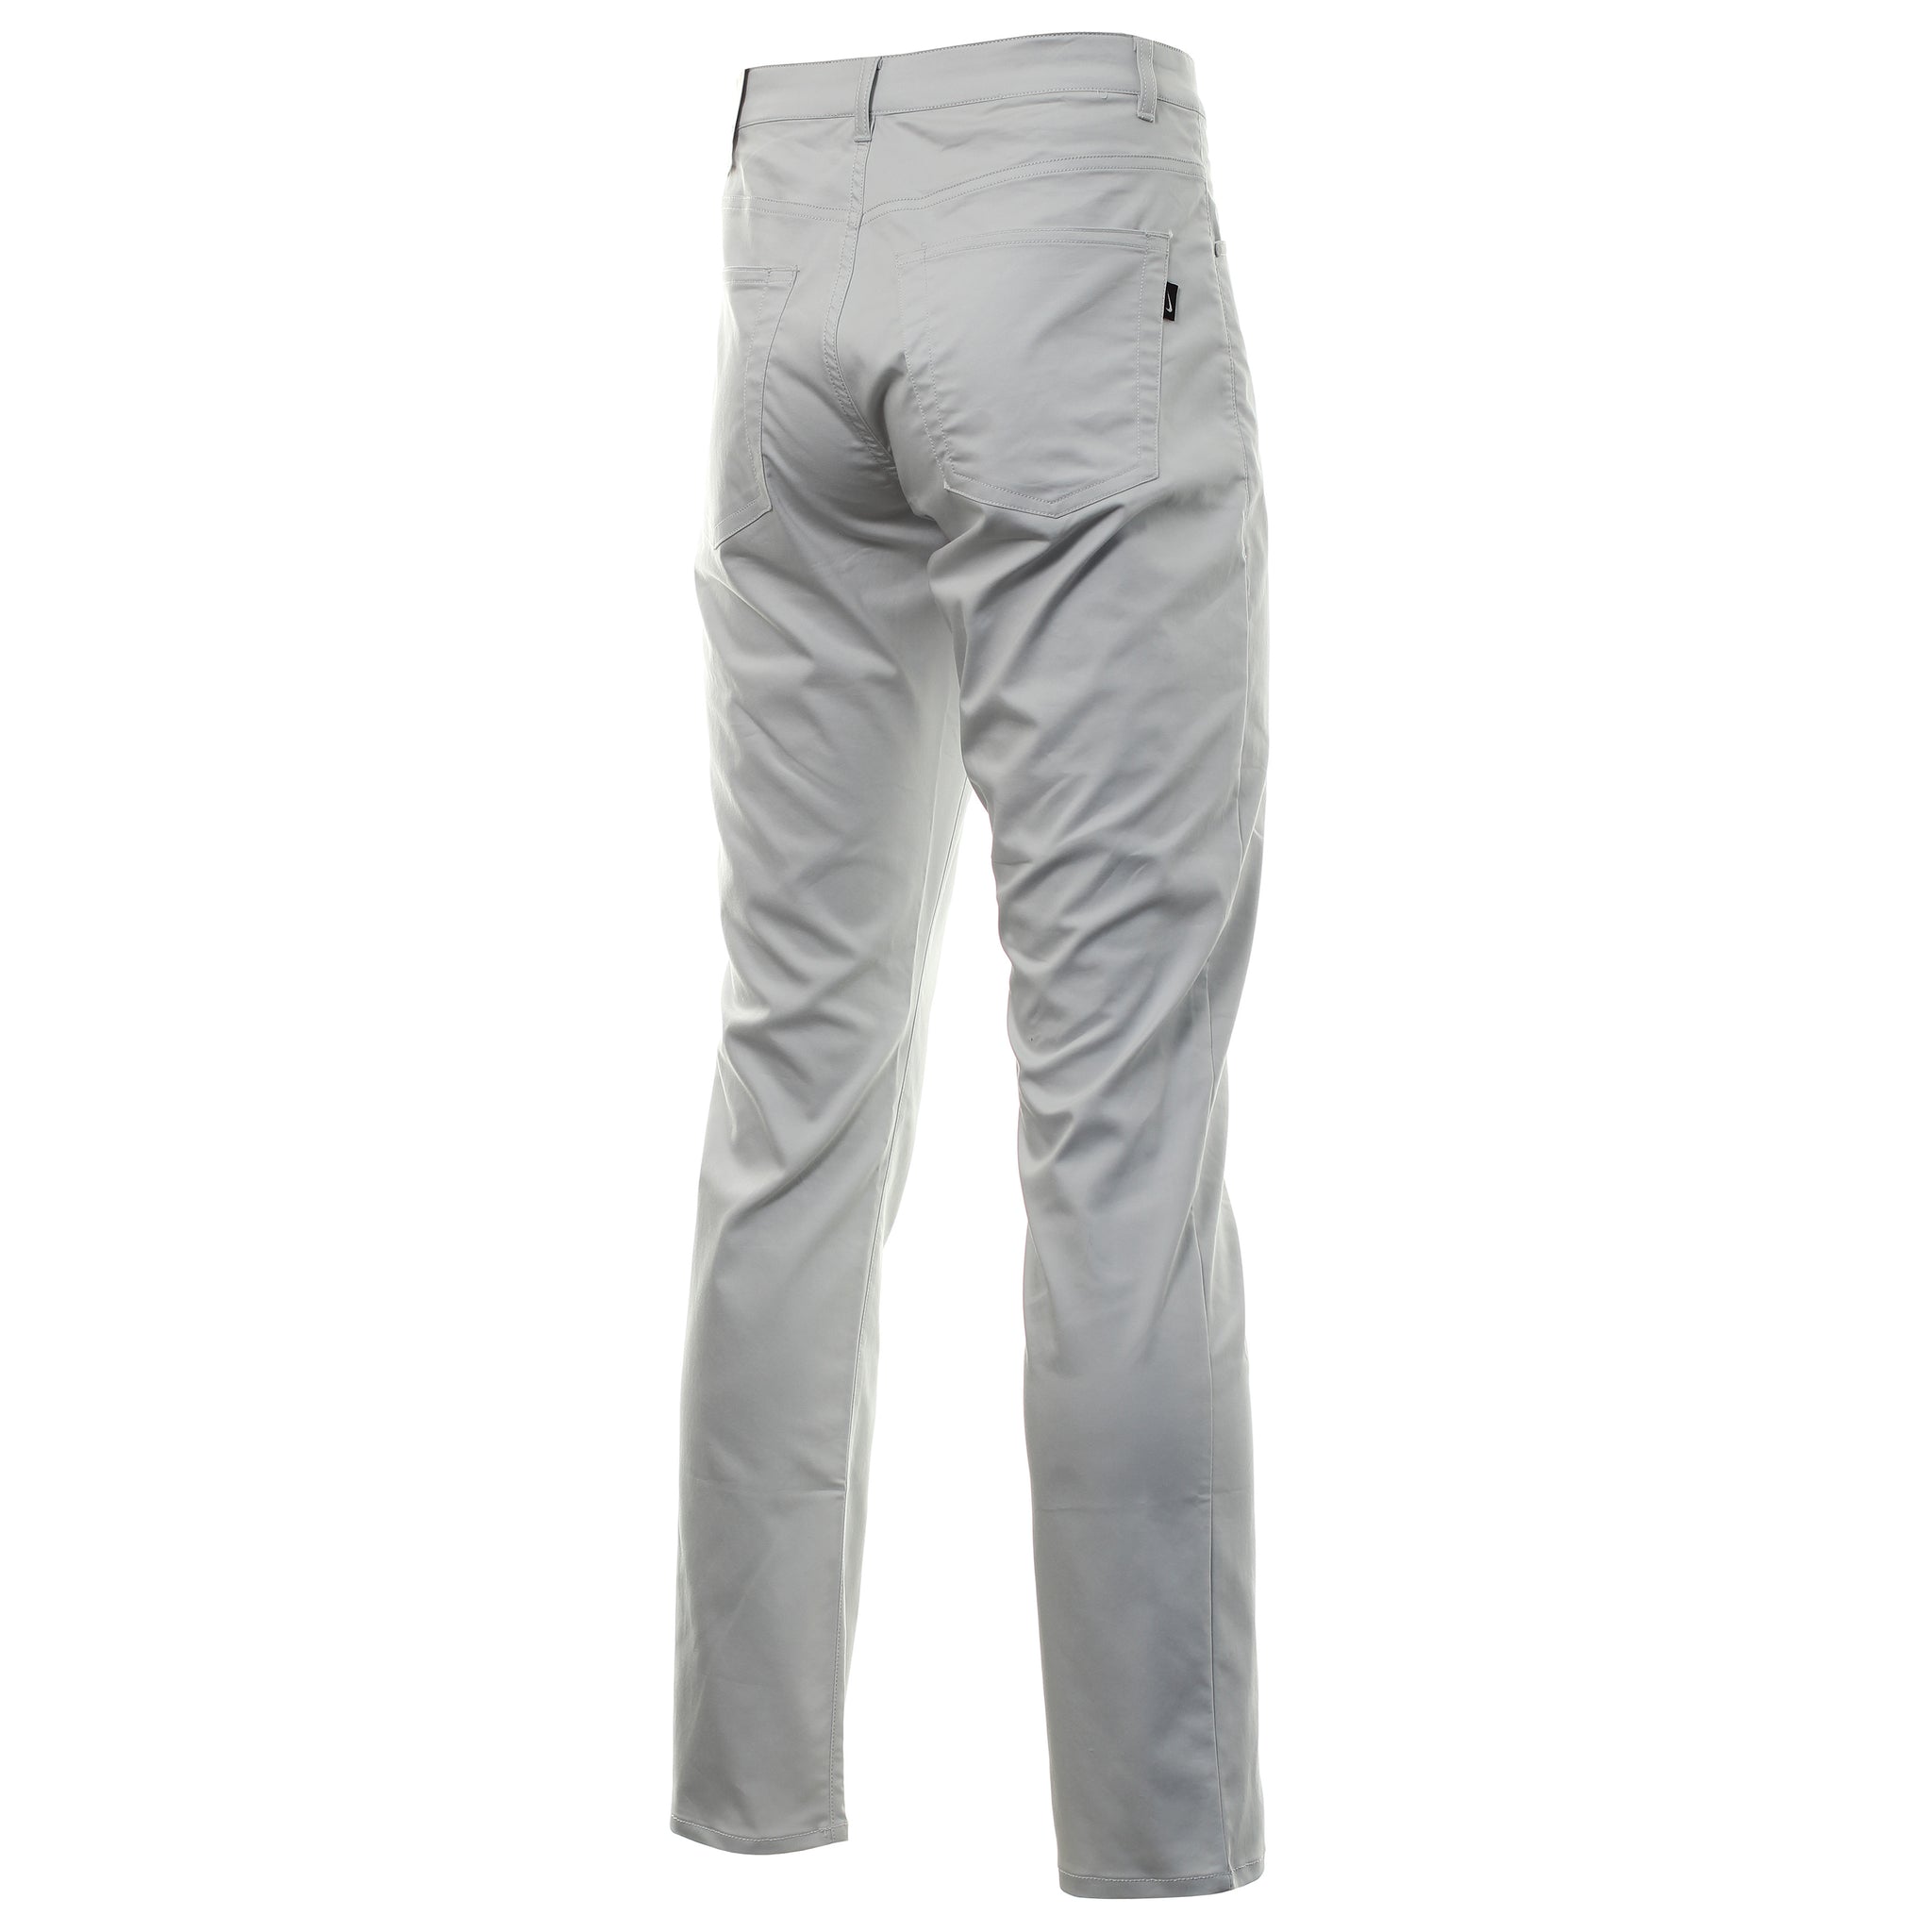 Nike Golf Flex 5 Pocket Pants